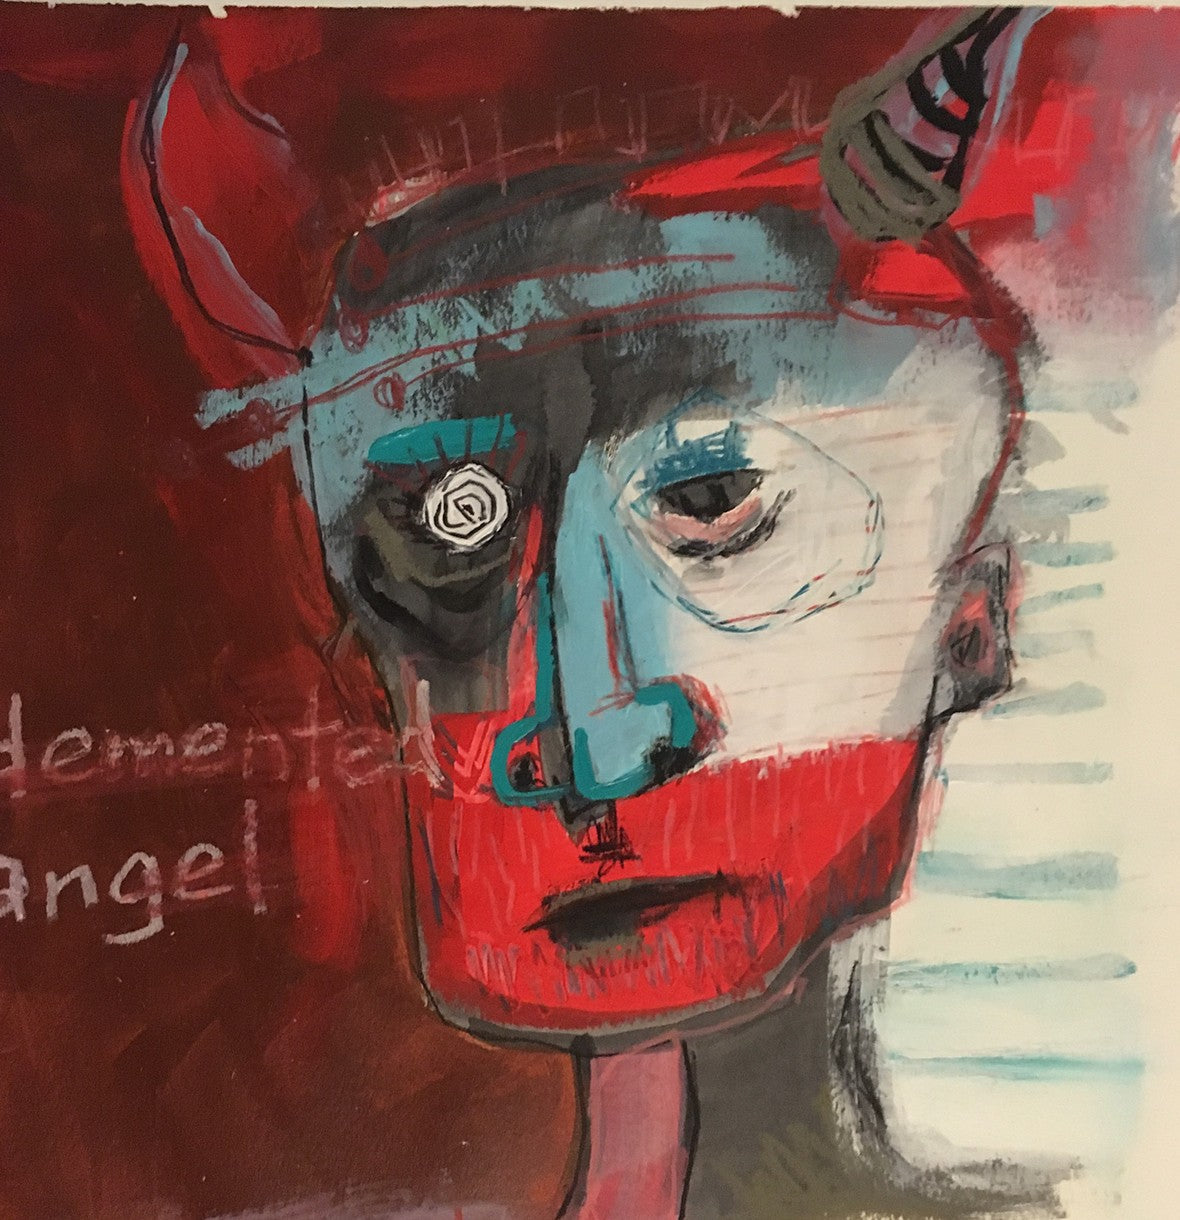 Demented angel by Vikki Drummond